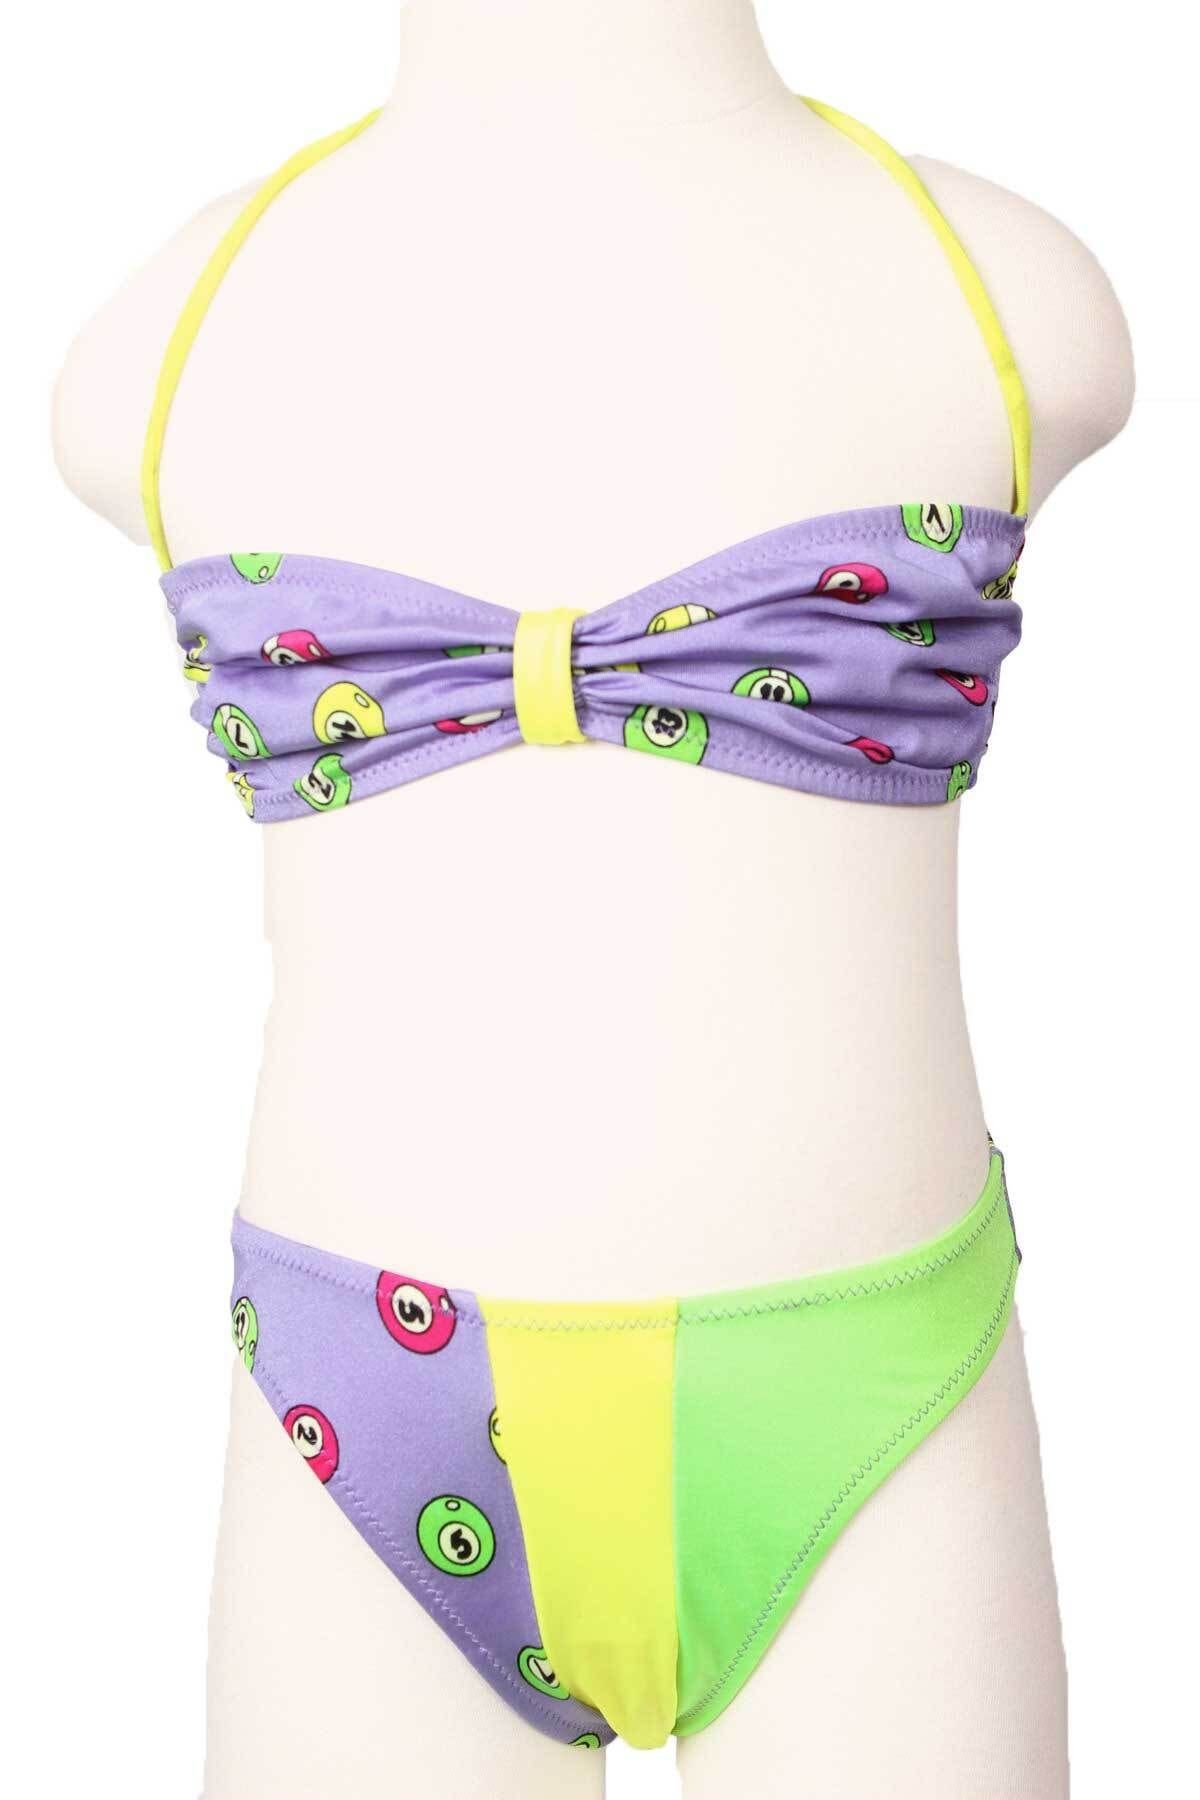 Sude Ayl Kız Çocuk Mor Boyundan Bağlamalı Straplez Model Empirme Desenli Alt Üst Bikini Takım 117